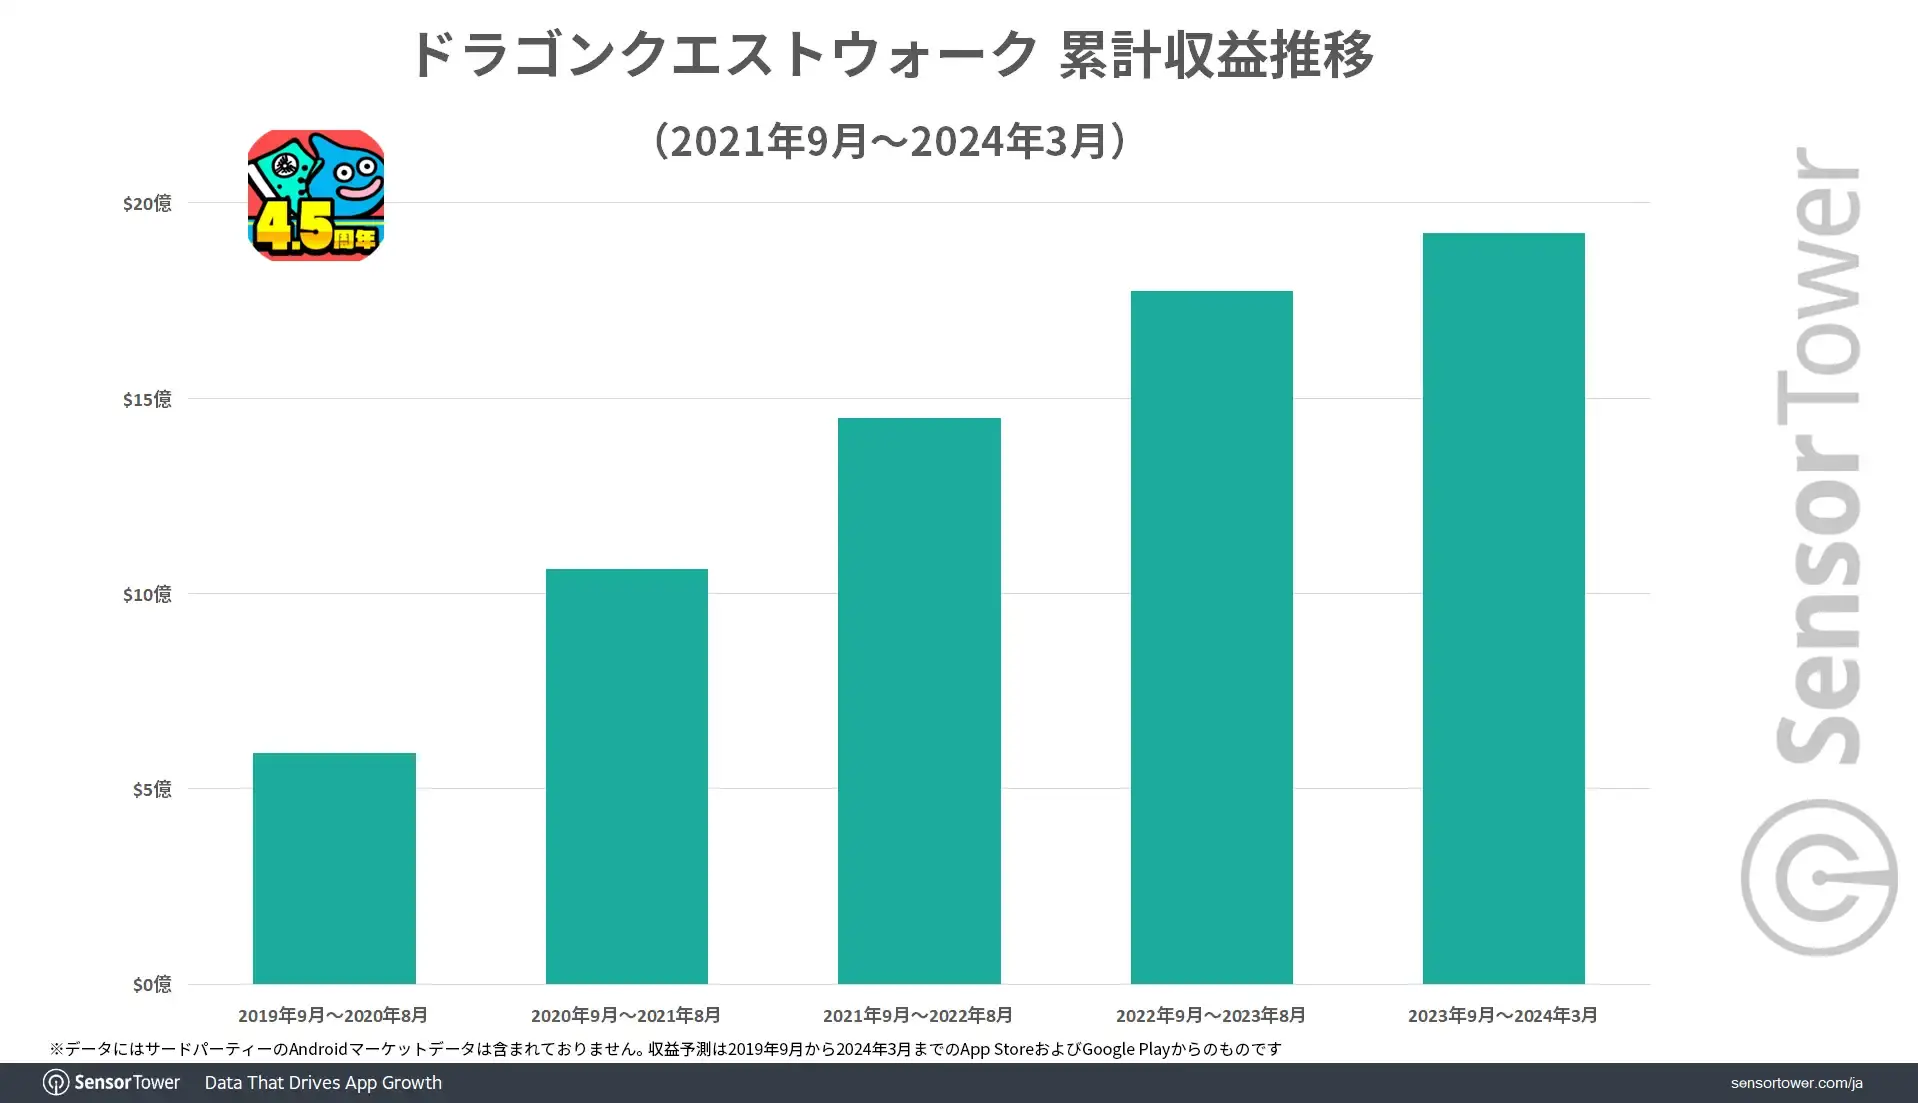 《勇者斗恶龙WALK》累计营收将近20亿美金为日本营收最高位置情报游戏